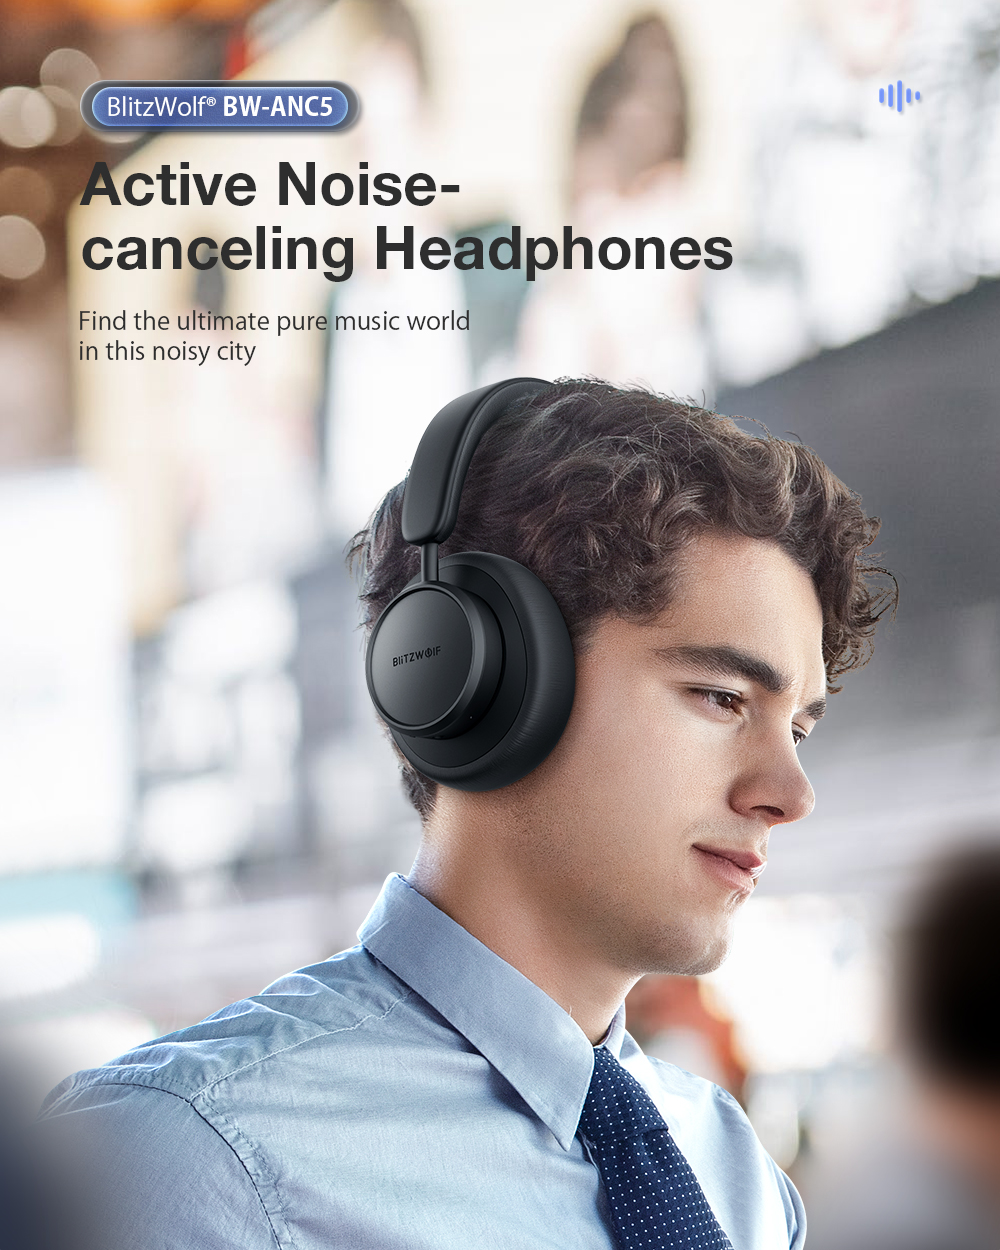 Blitzwolf BW-ANC5 Active Noise canceling headphone